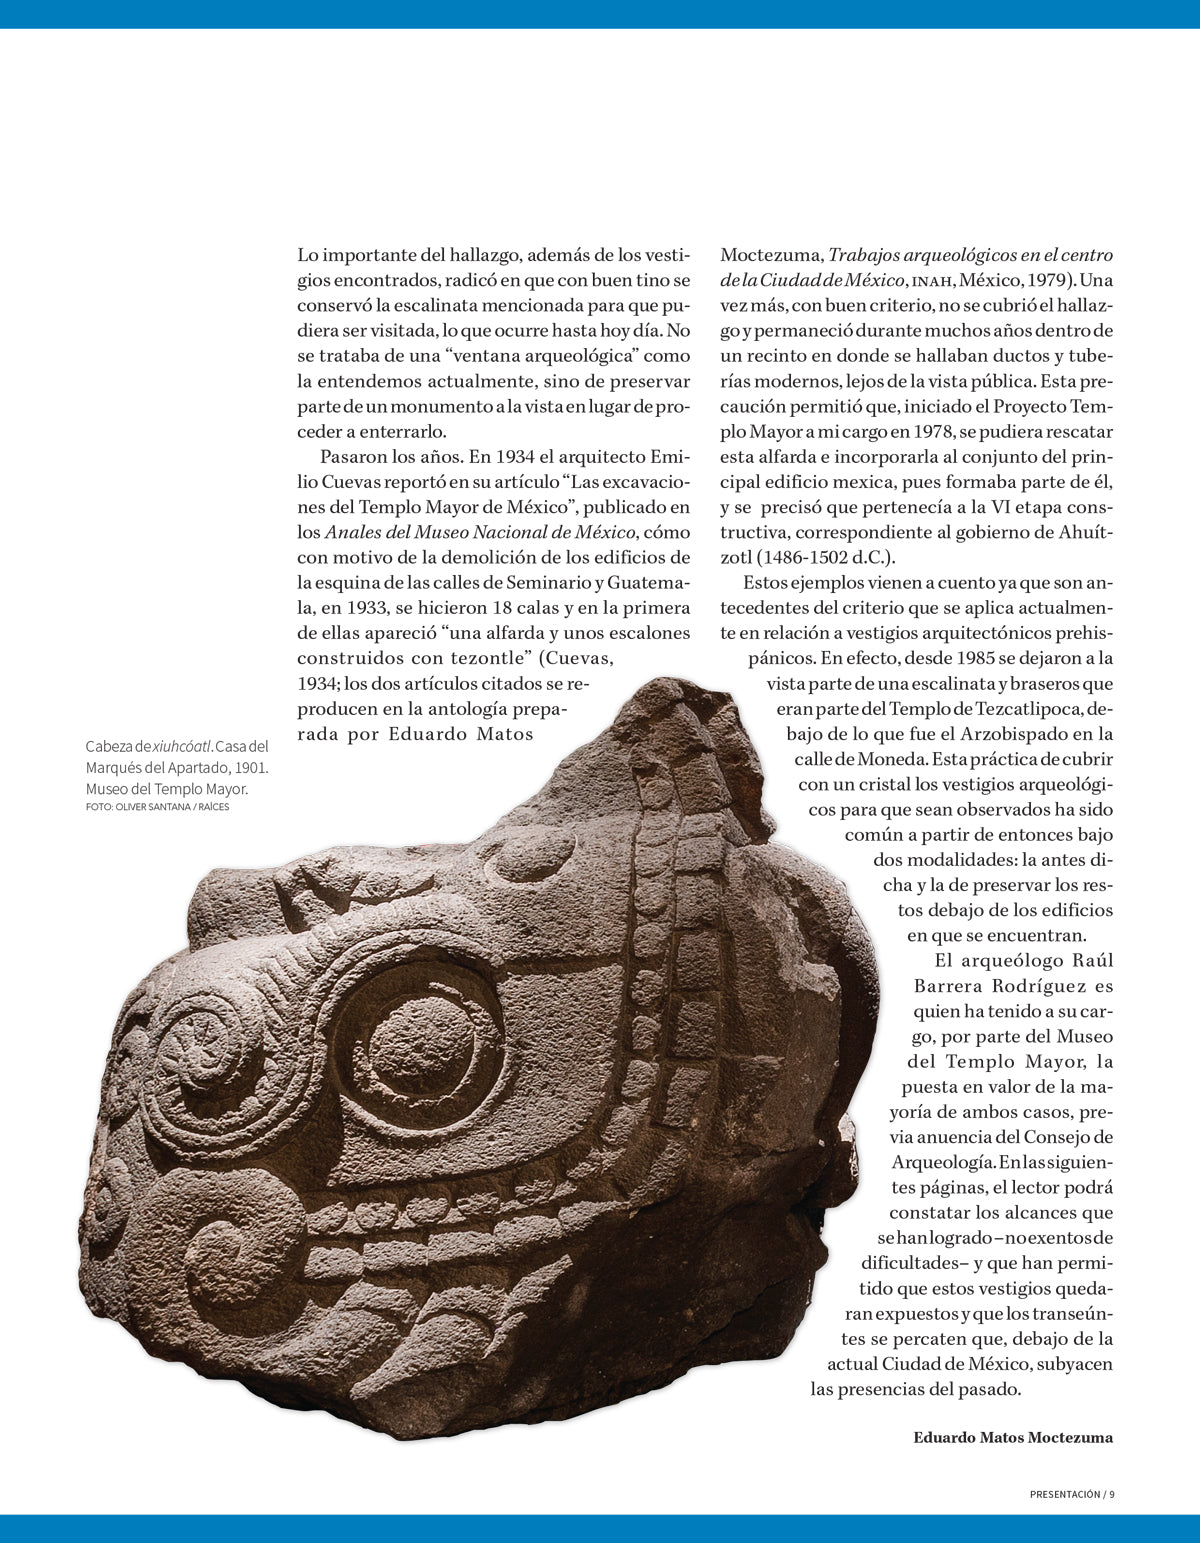 Ventanas arqueológicas en el Centro Histórico de la Ciudad de México